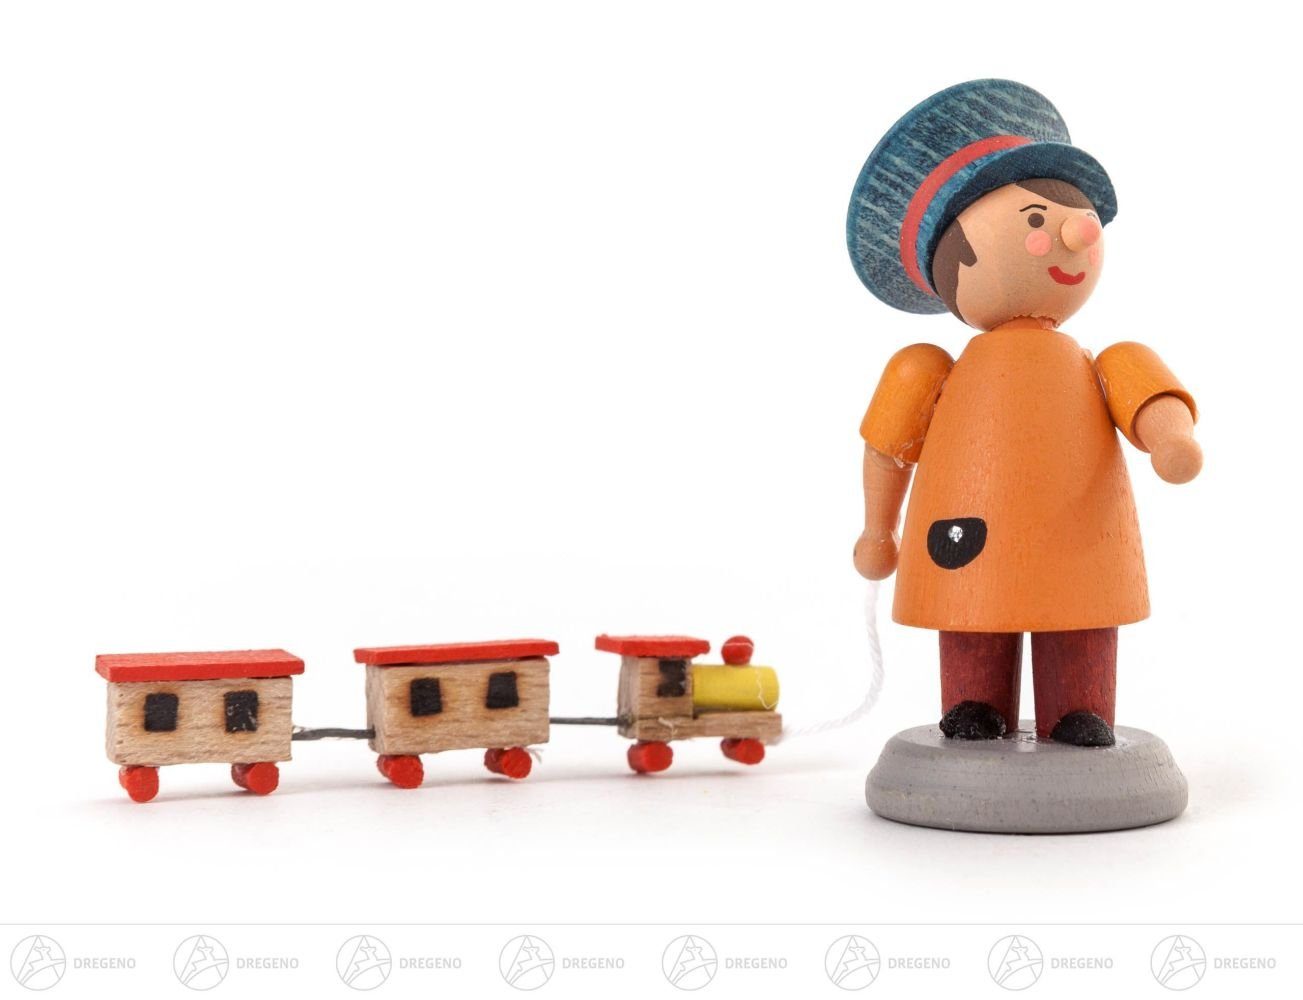 Dregeno Erzgebirge Weihnachtsfigur Miniatur Kleiner Lokführer Höhe ca 5 cm NEU, mit Eisenbahn und Schaffnermütze